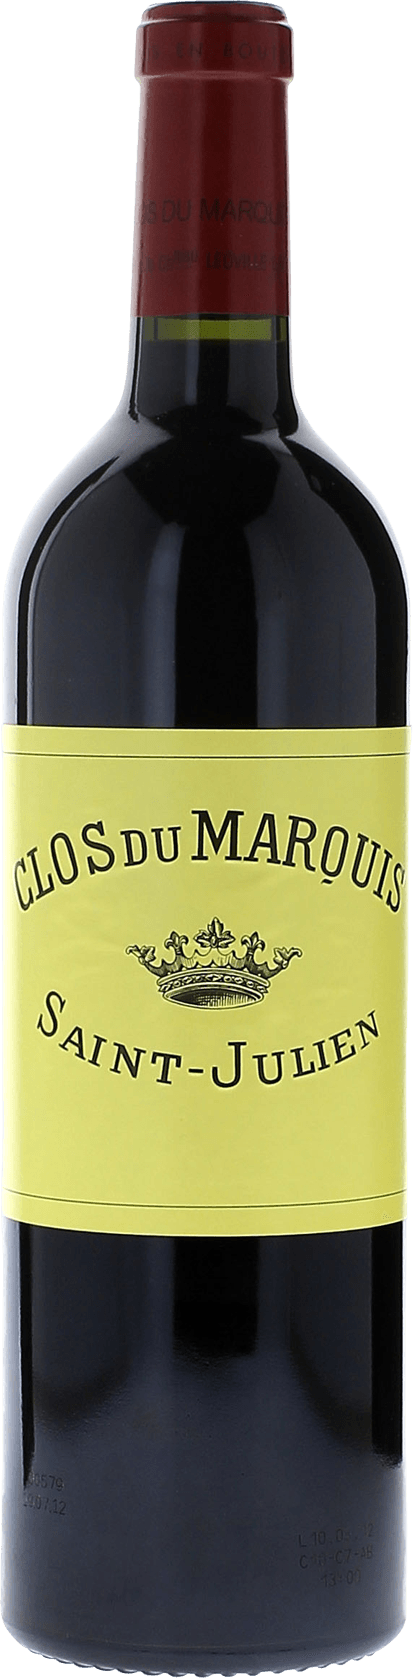 Clos du marquis 1993 2me vin de LEOVILLE LAS CASES Saint-Julien, Bordeaux rouge